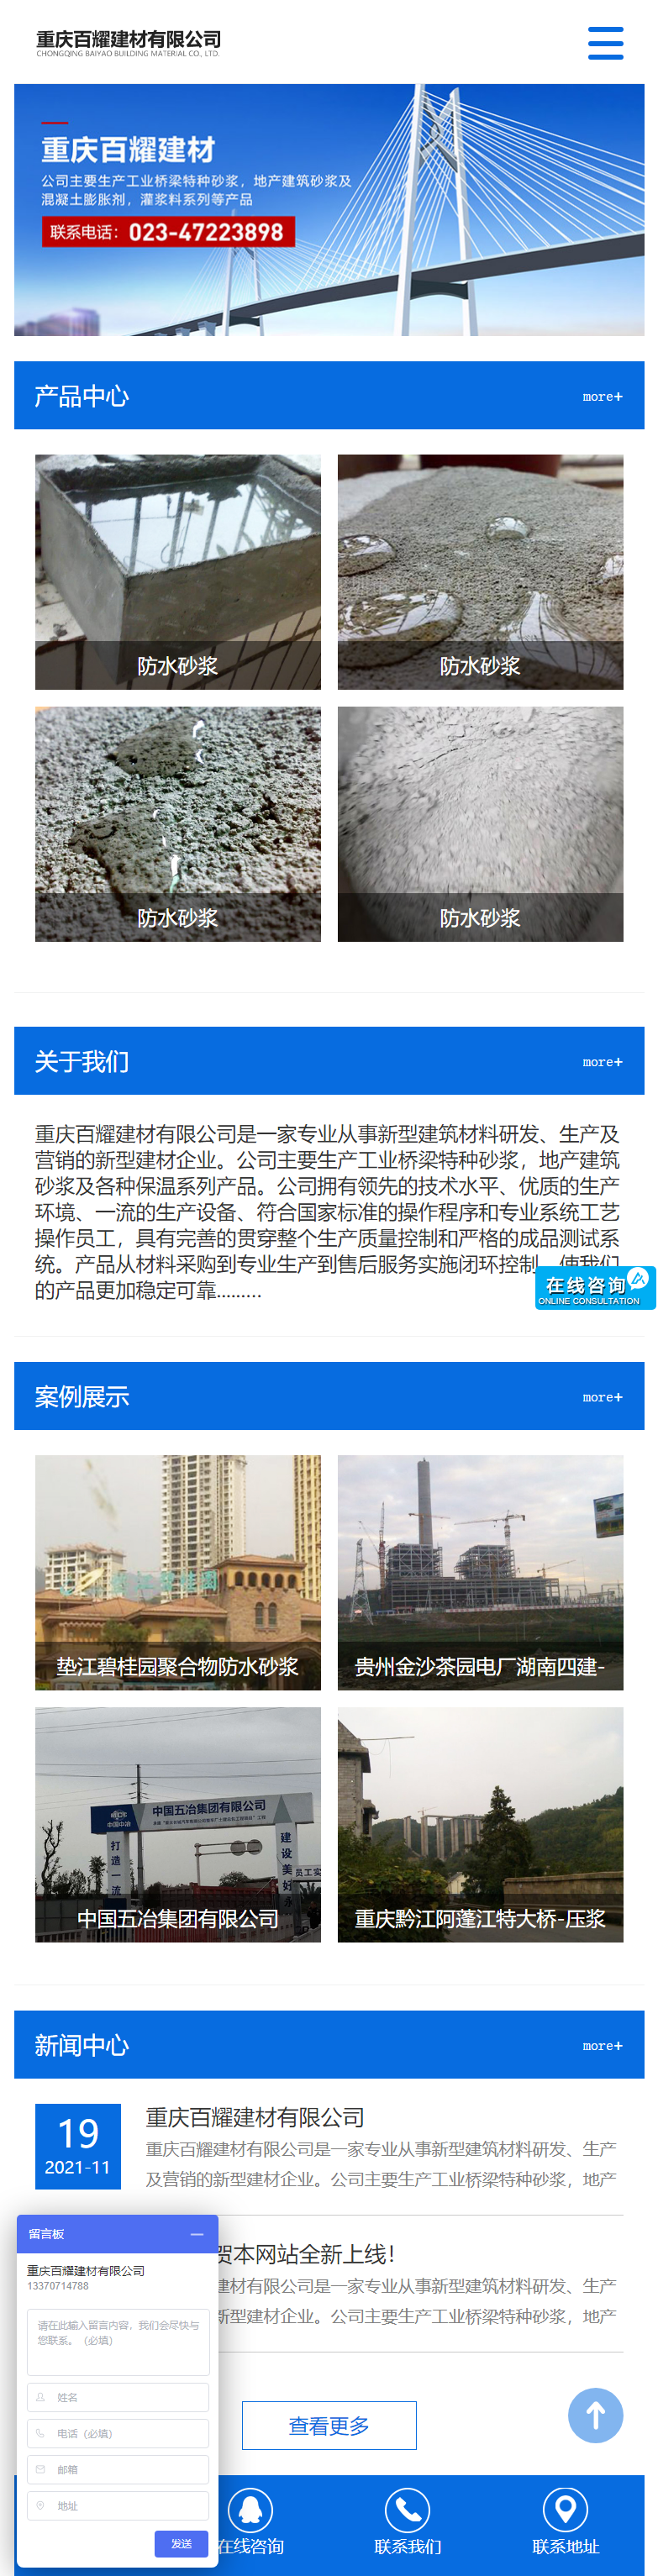 重庆百耀建材有限公司网站案例